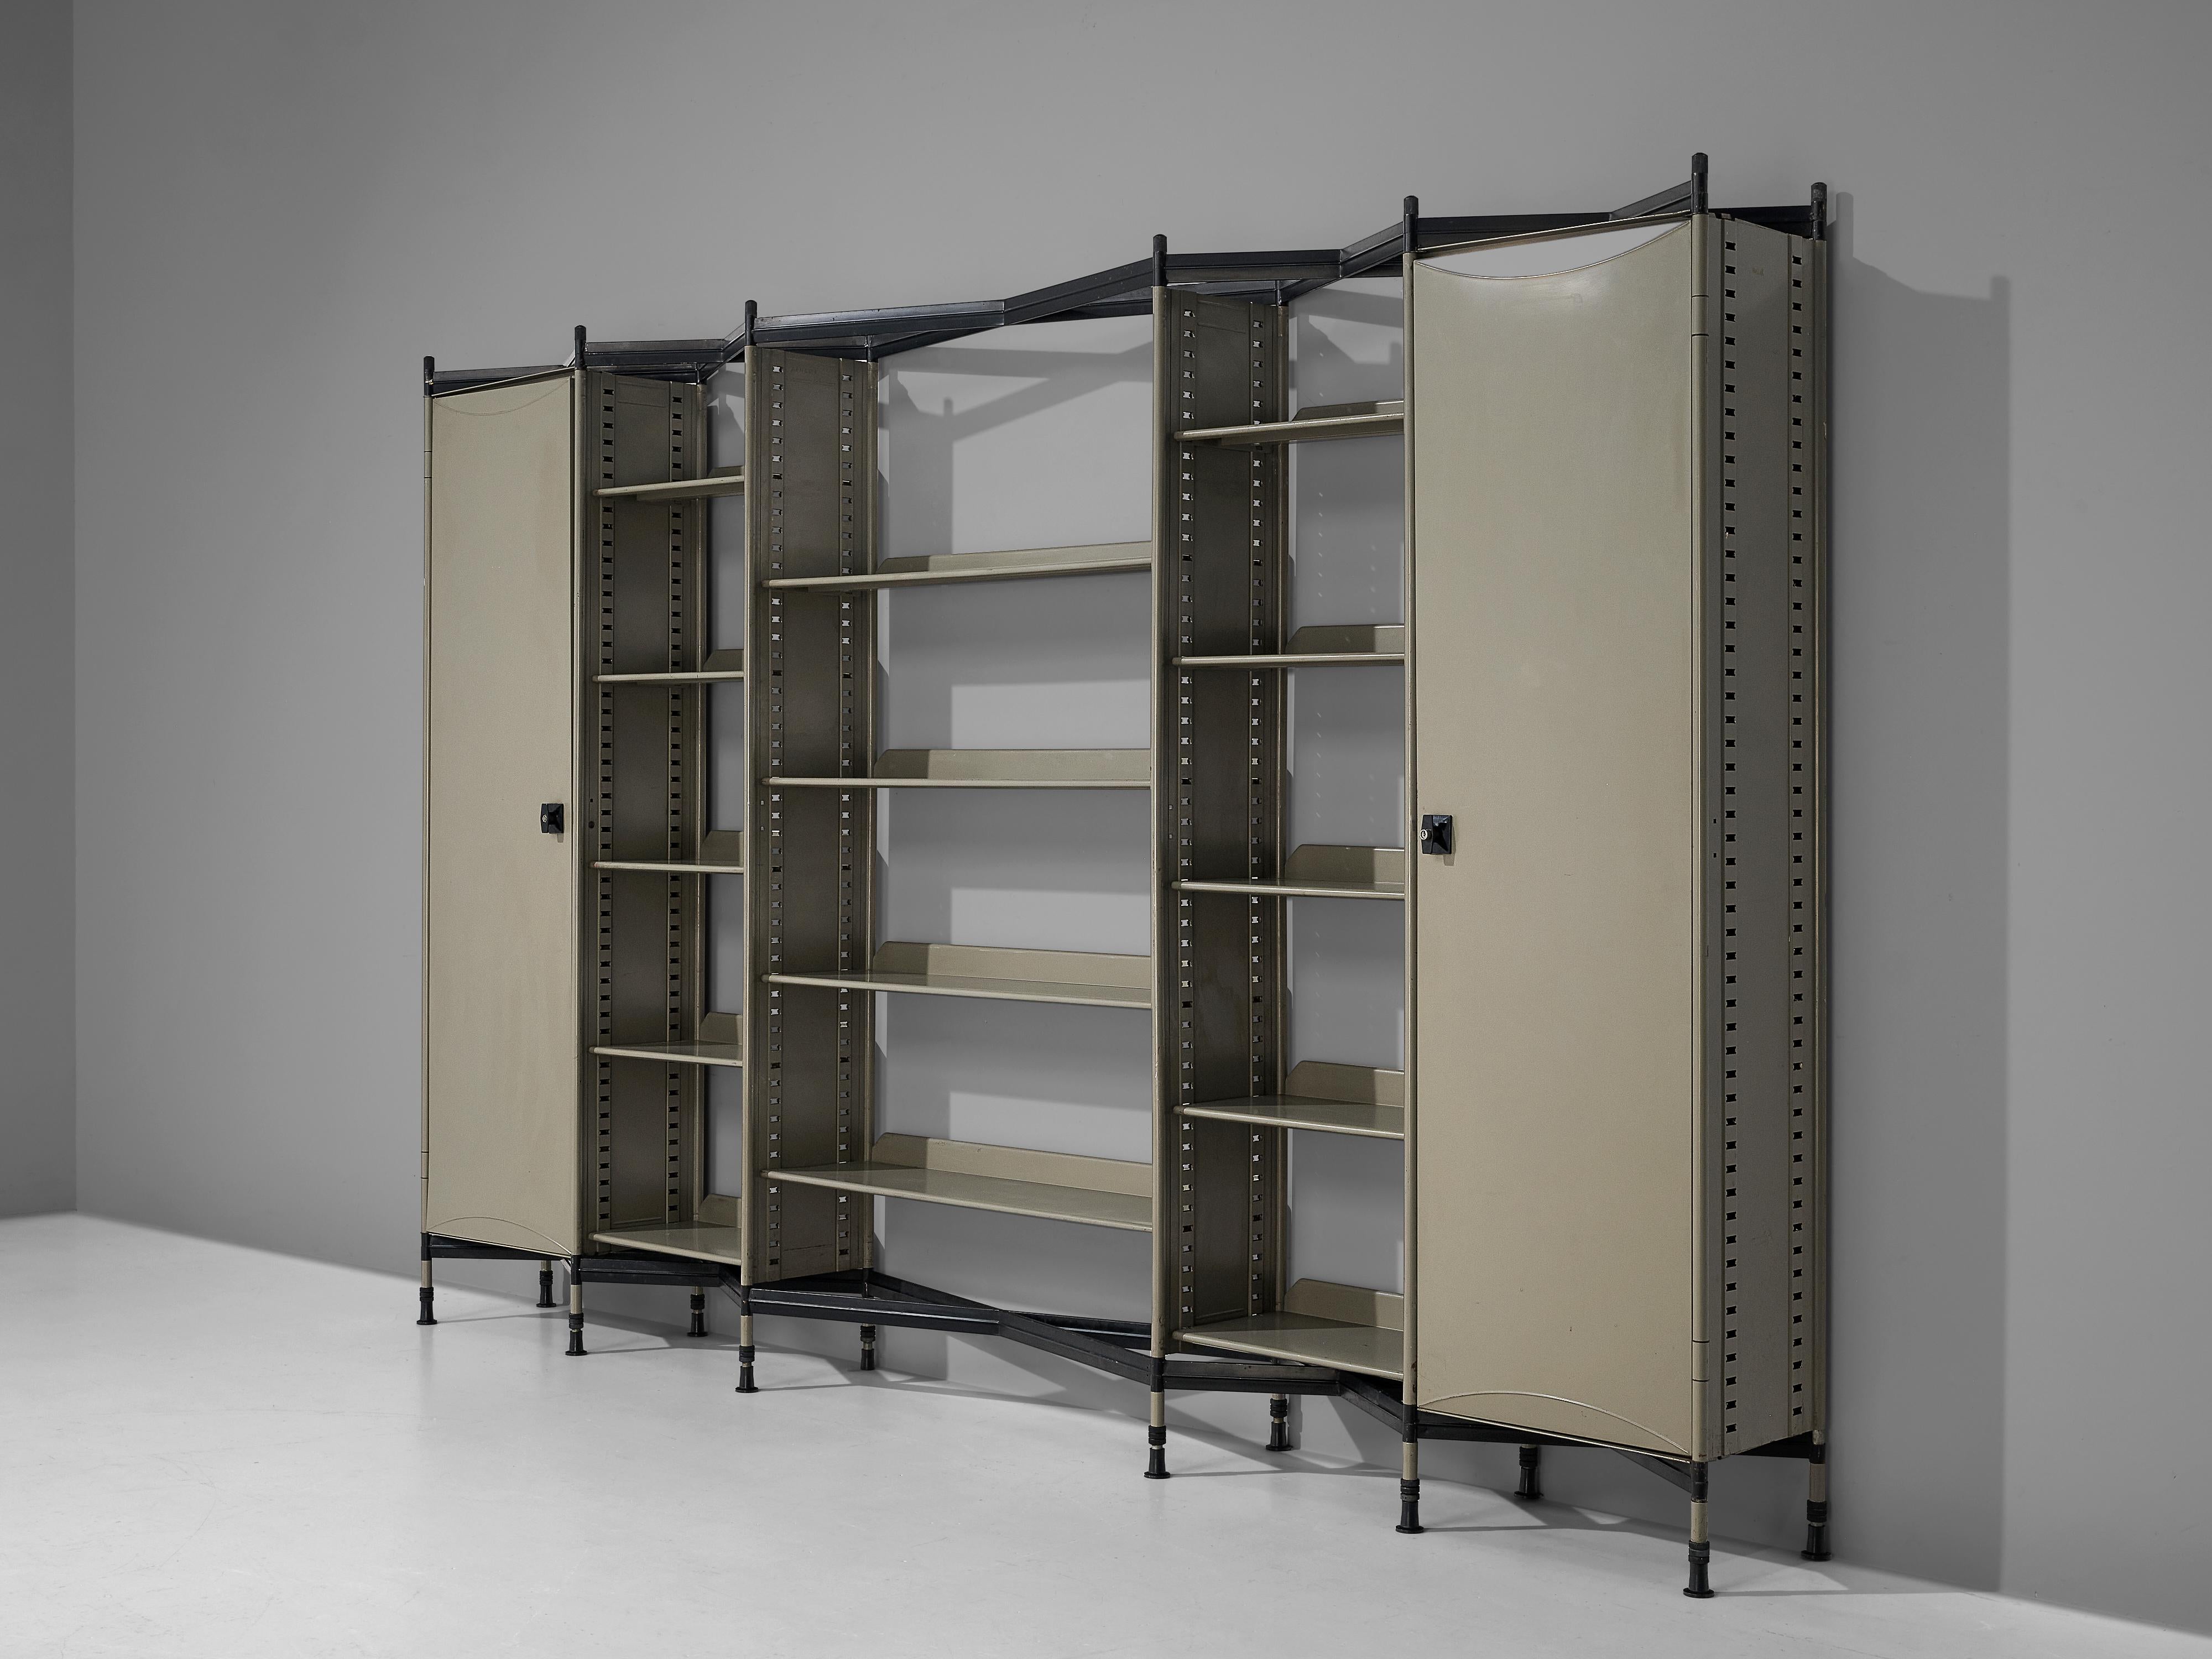 Studio BBPR for Olivetti 'Spazio' Shelving System in Metal For Sale 1